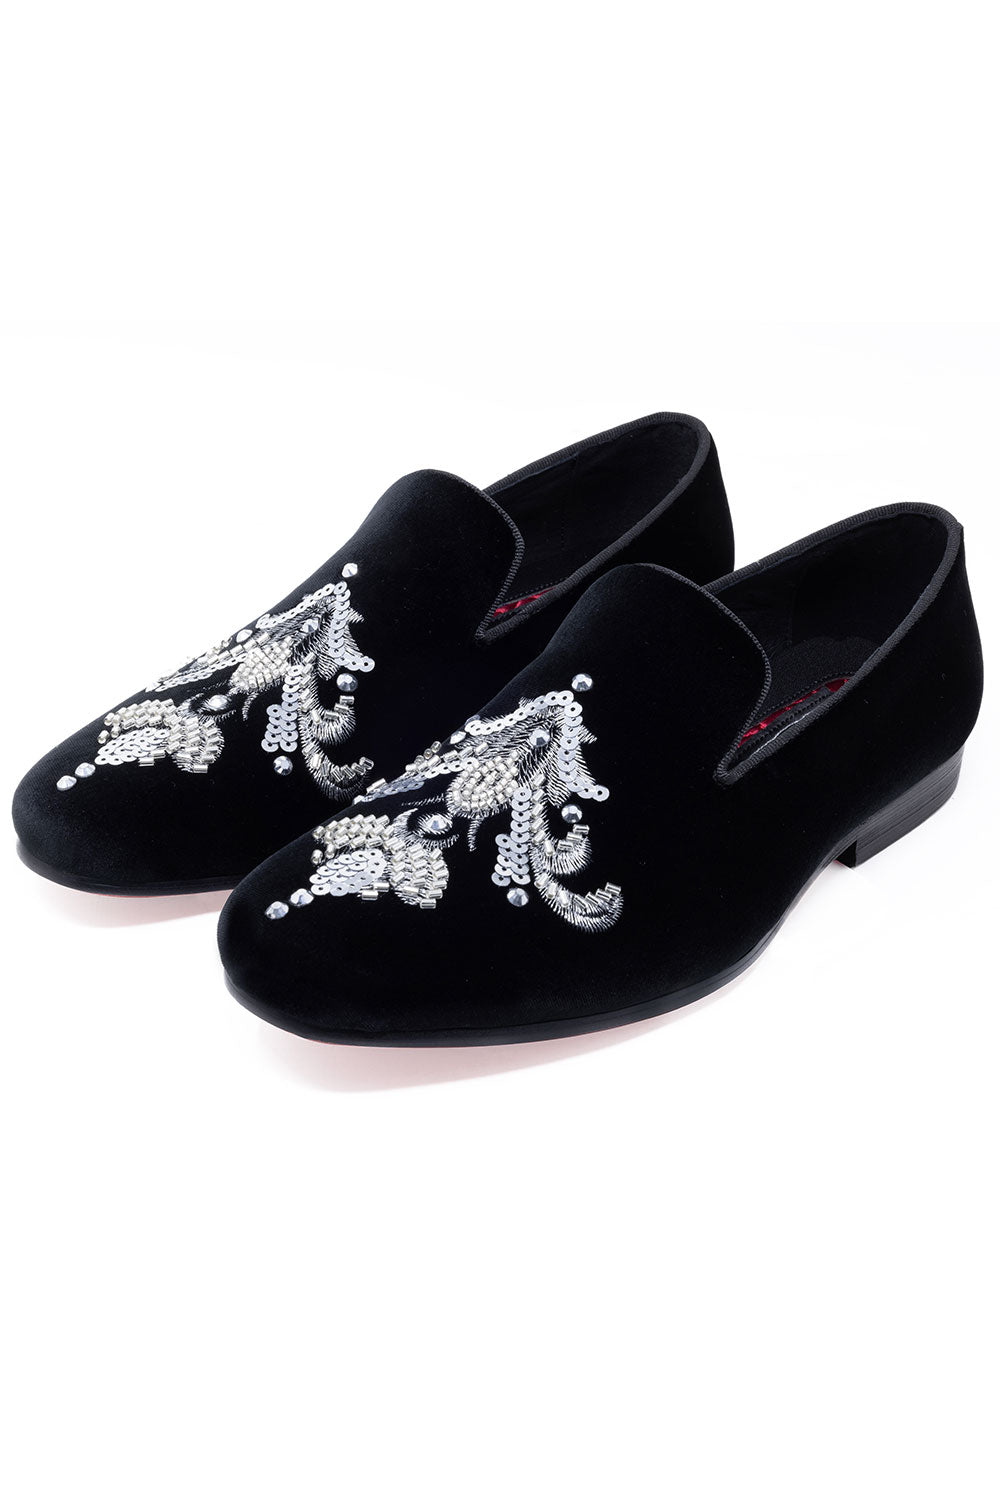 Barabas Men's Sequin Velvet Design Slip On Loafer Shoes 2SHR2 Black Silver